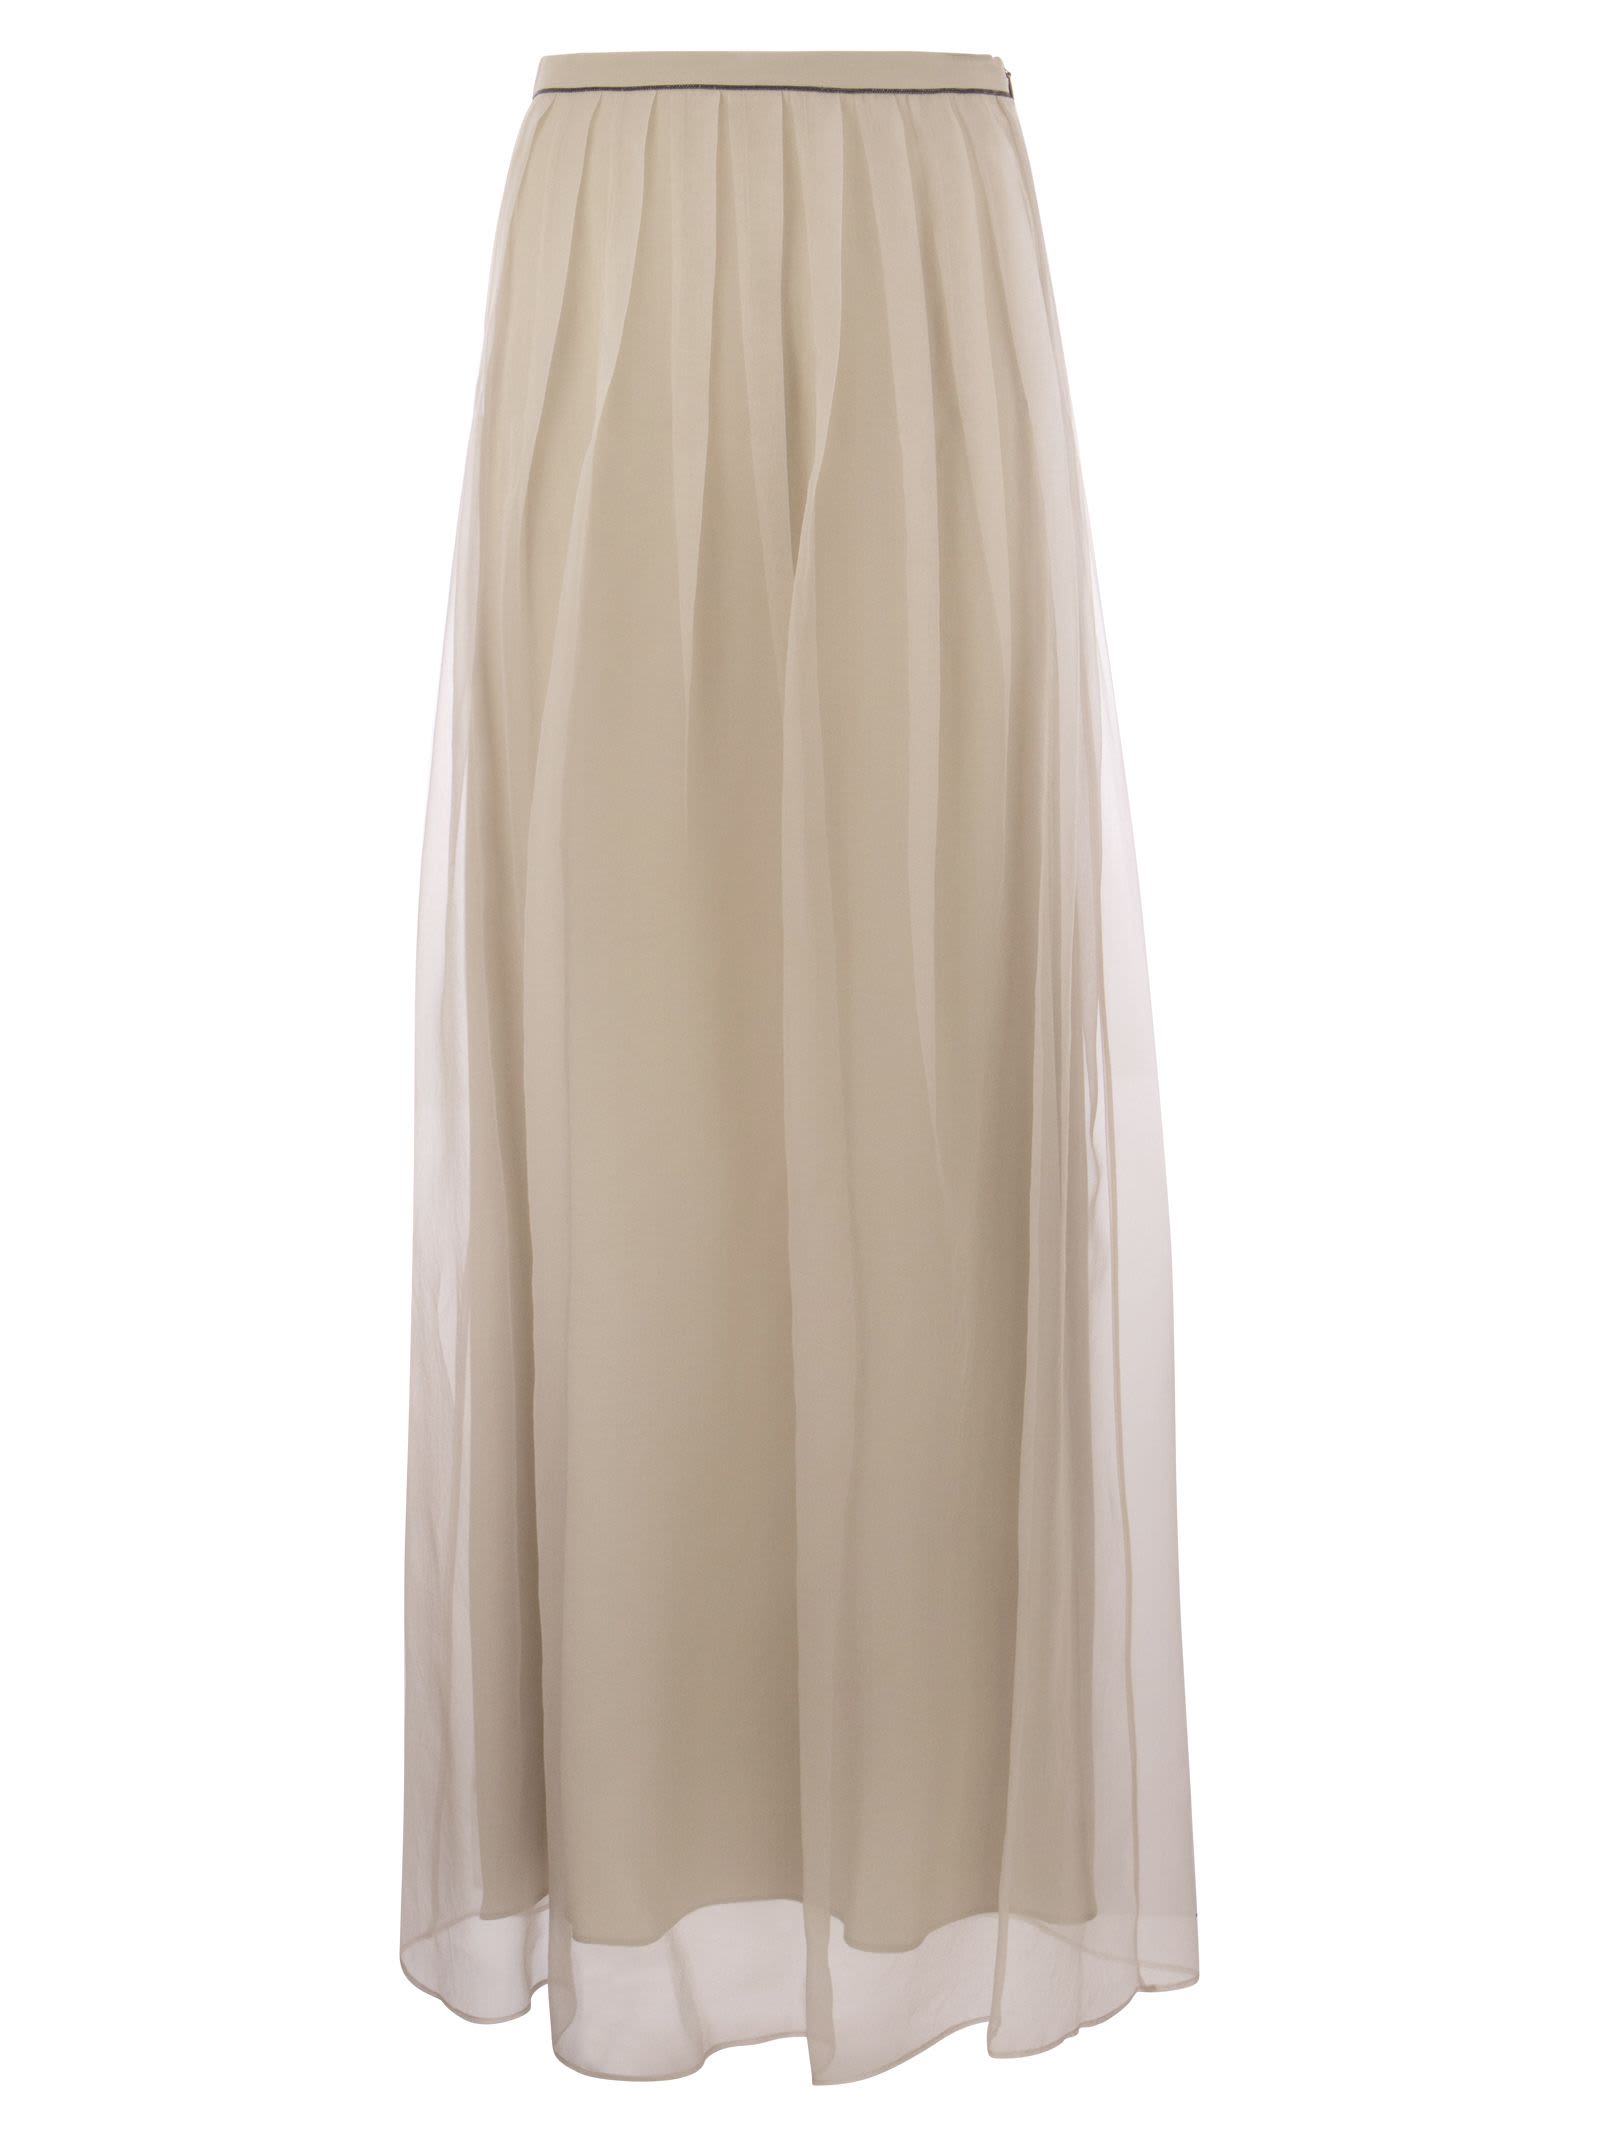 Crispy Silk Pleated Midi Skirt With Shiny Waistband